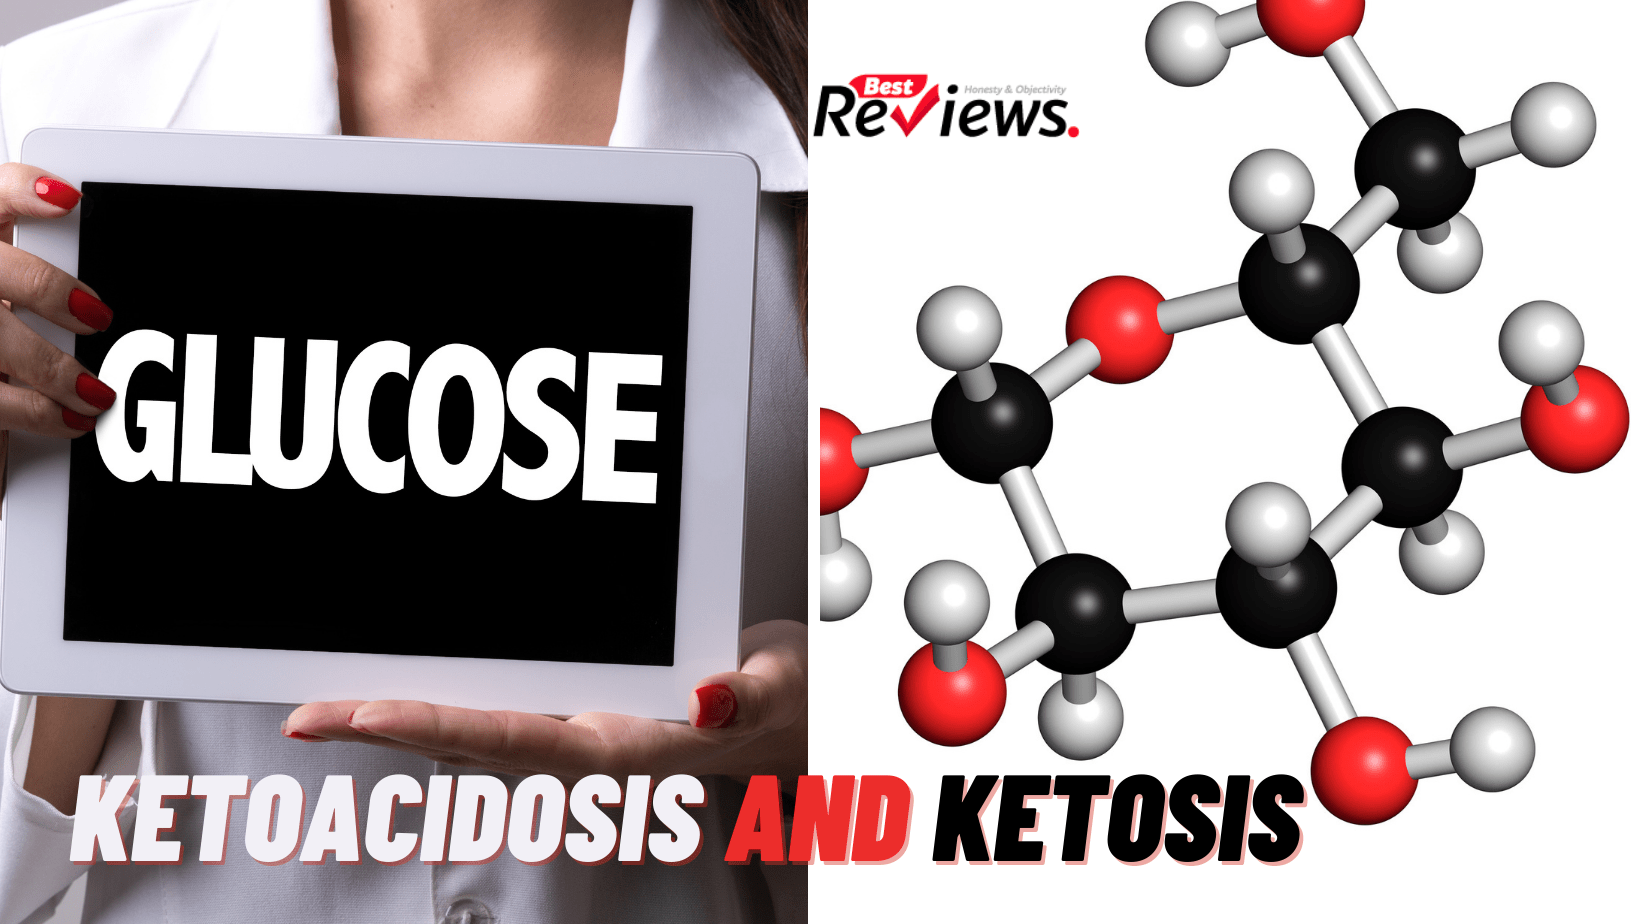 Ketoacidosis and ketosis